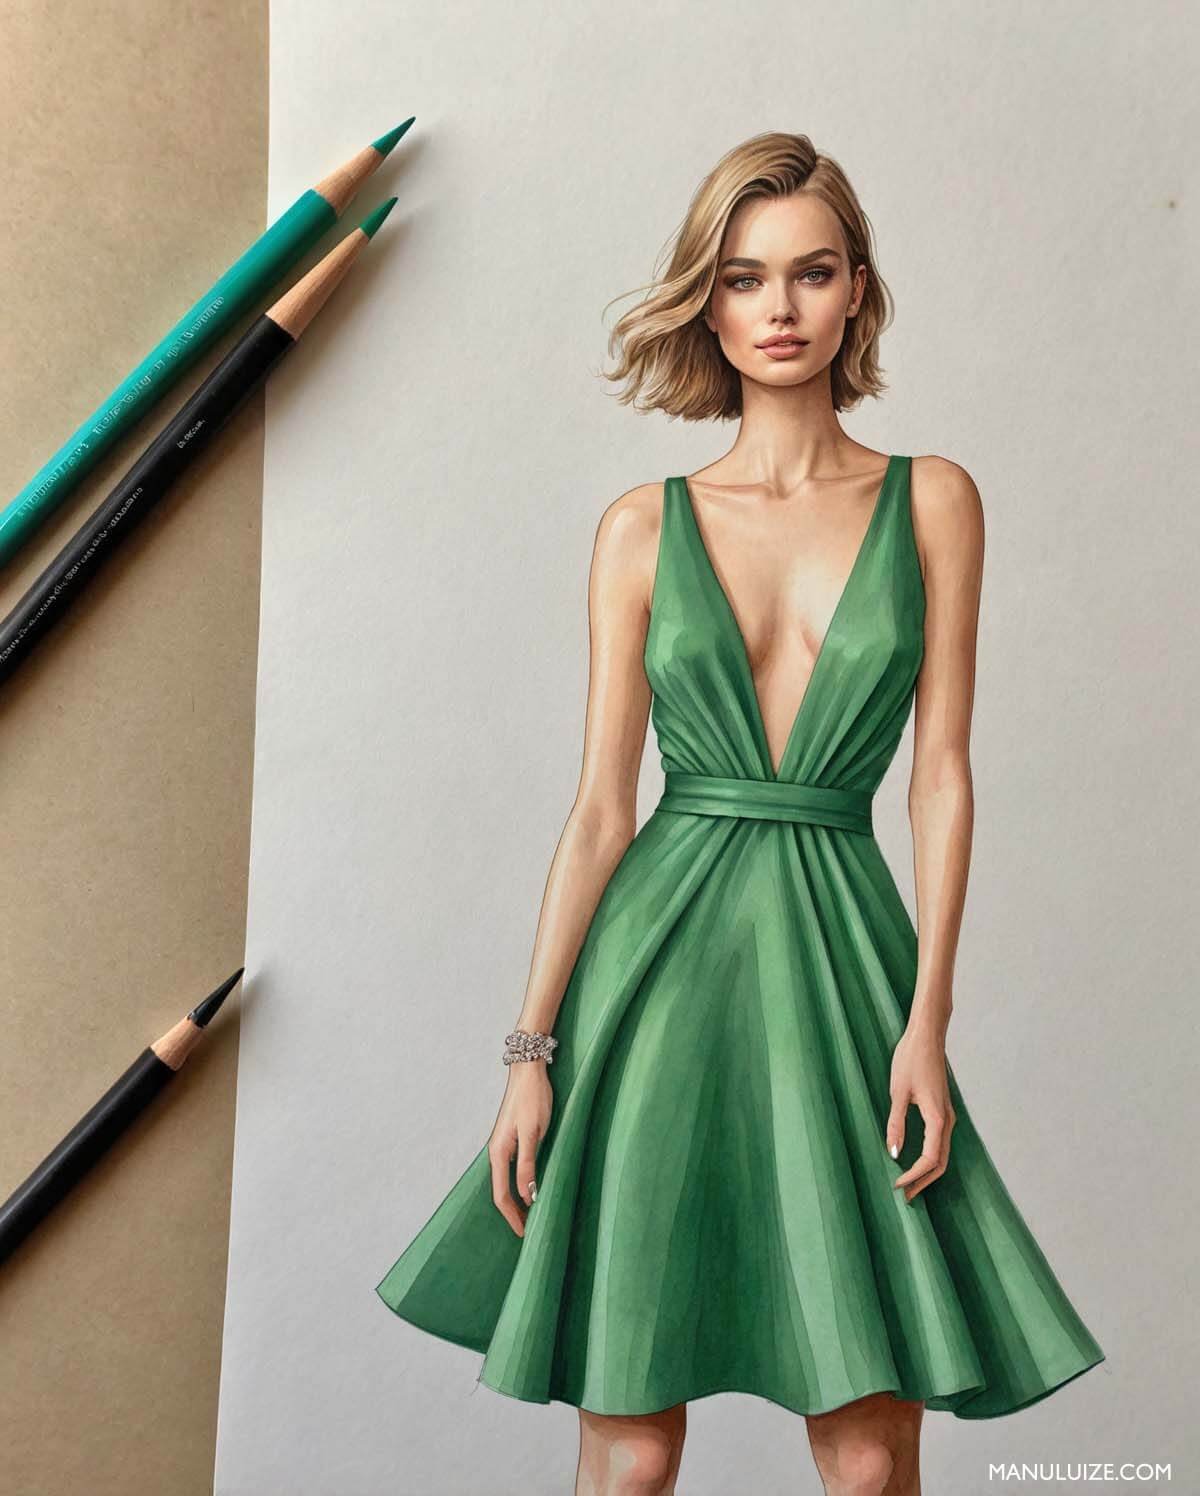 Croqui de moda de um vestido verde minimalista